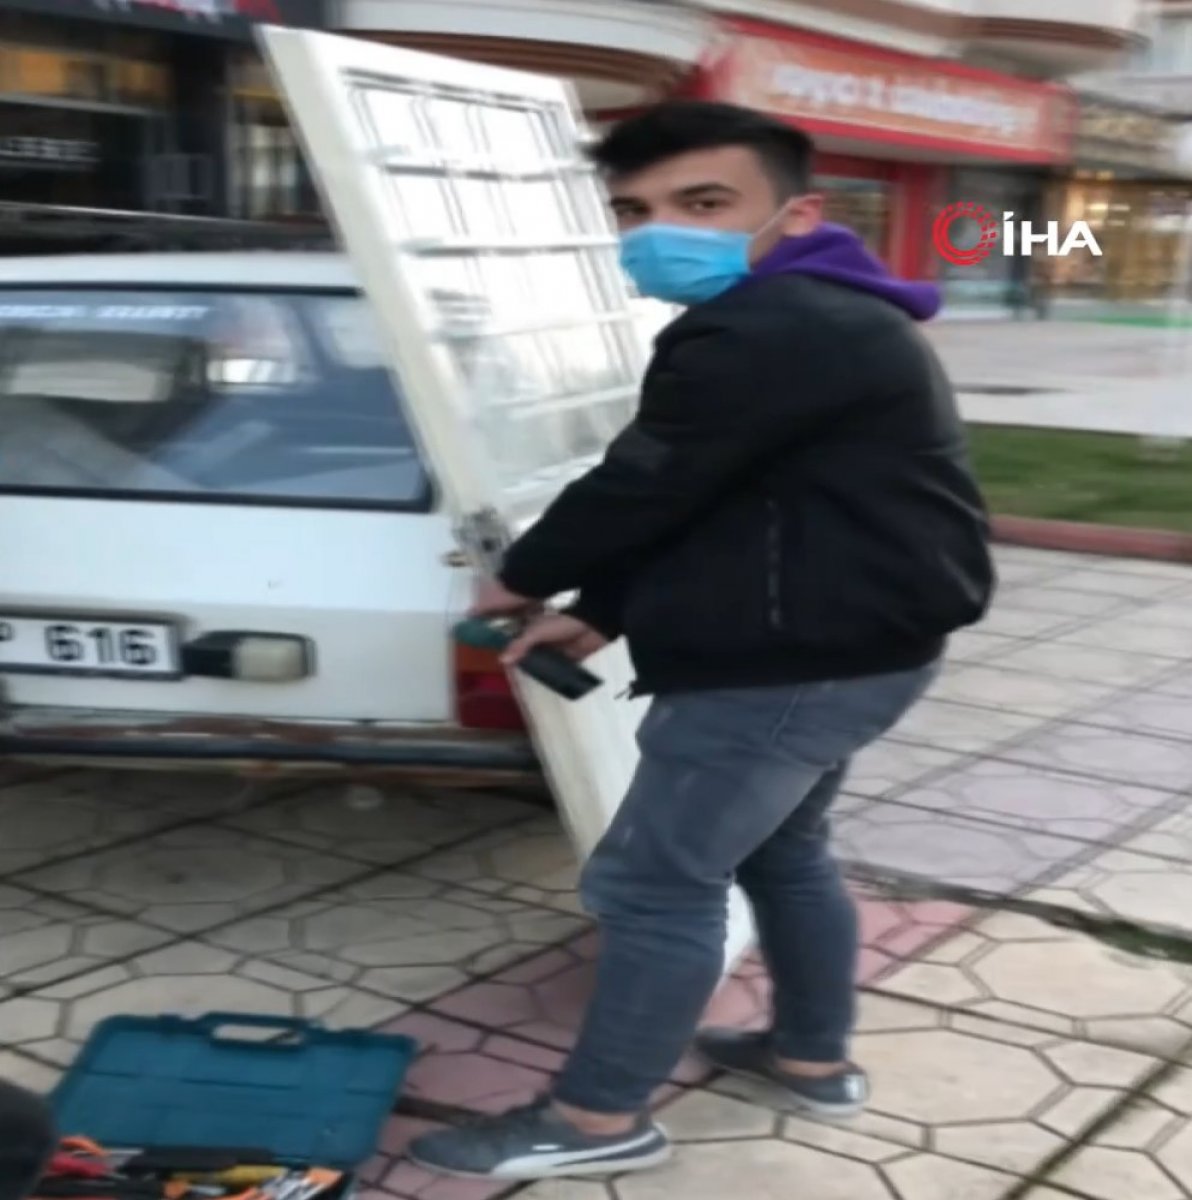 Kahramanmaraş'ta servis ücreti vermek istemeyen yaşlı adamın çözümü